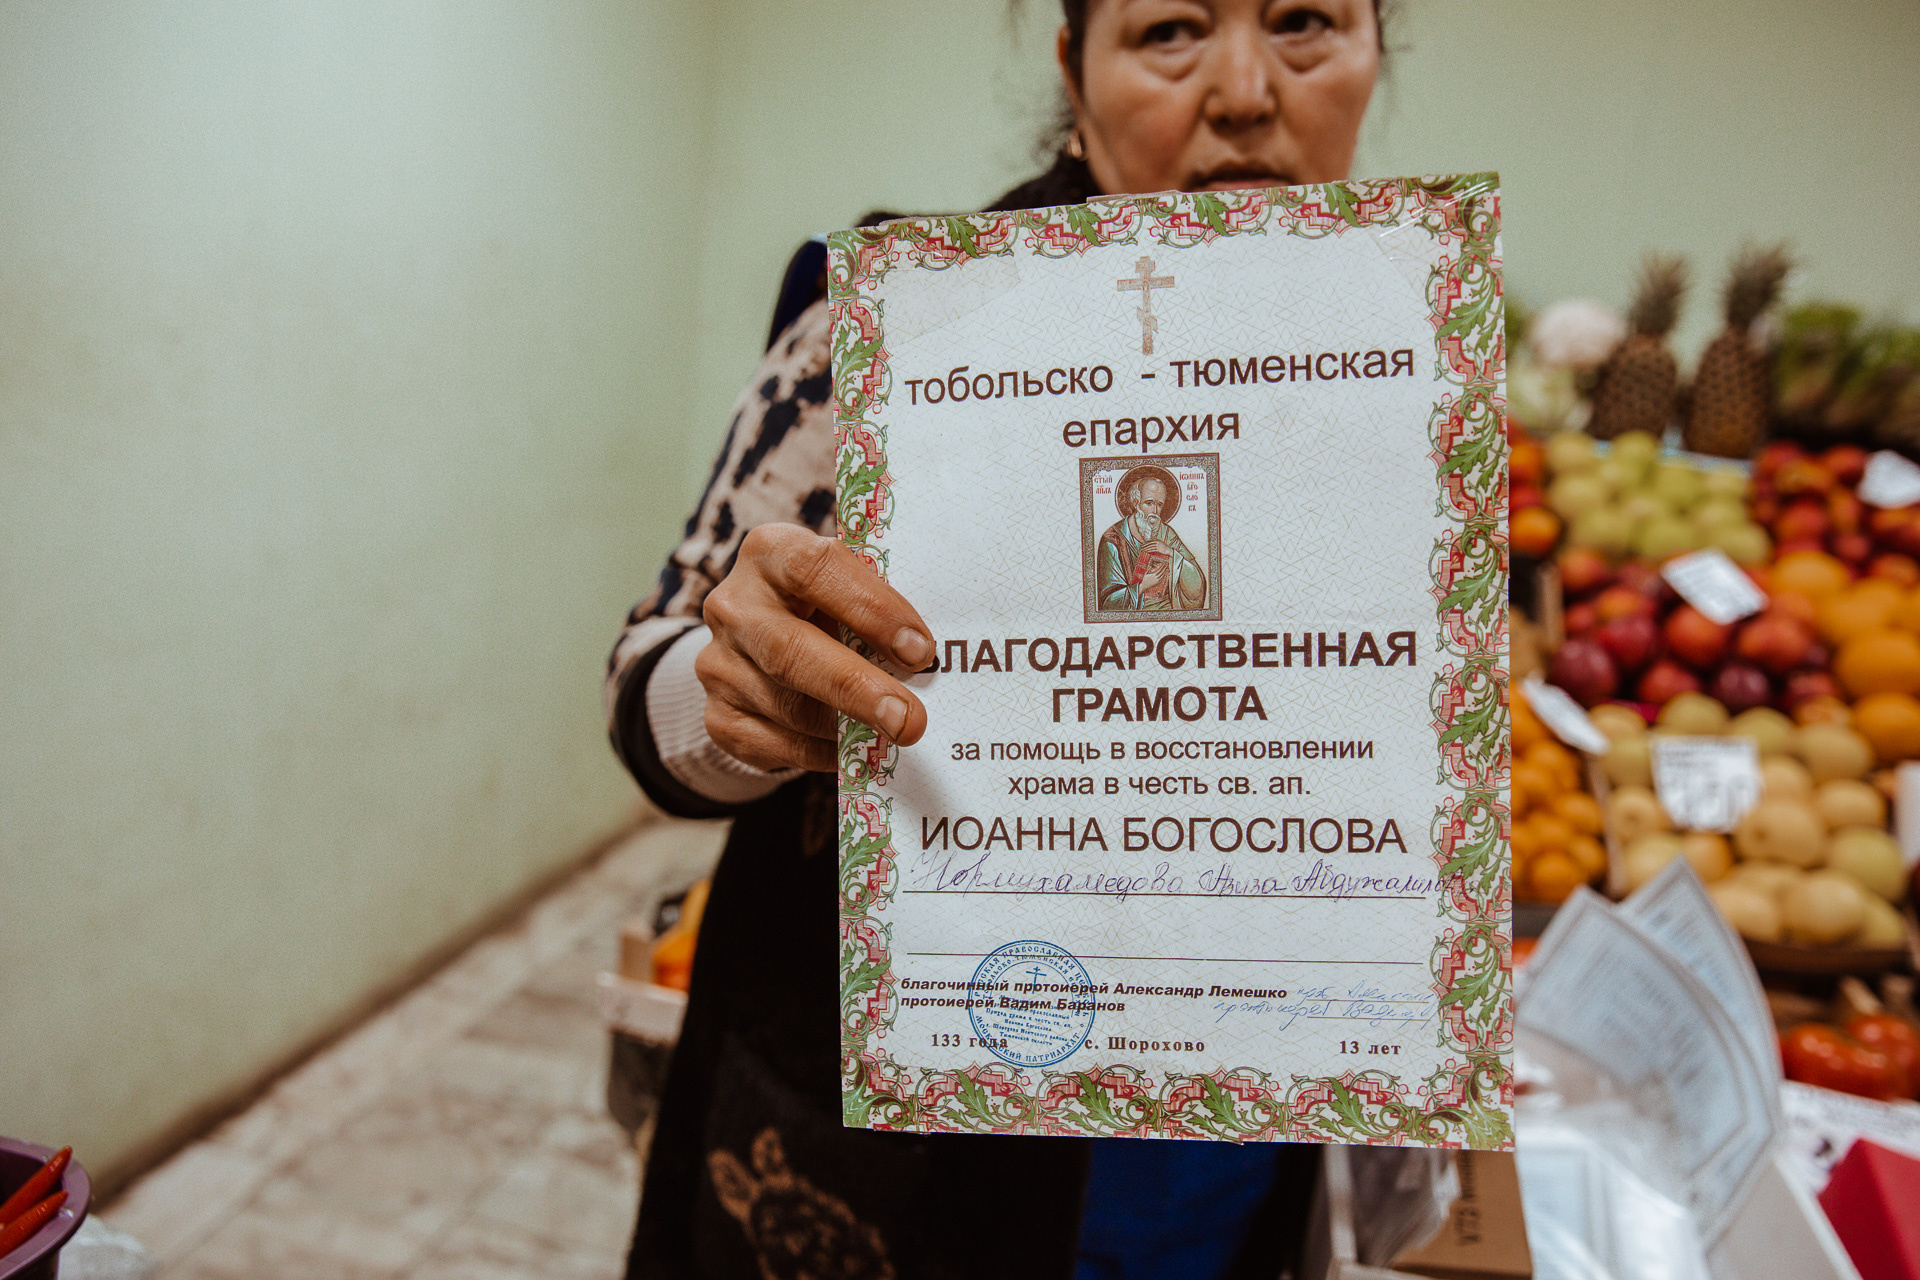 Женщина показала и грамоту, которую ей вручили за помощь в восстановлении храма